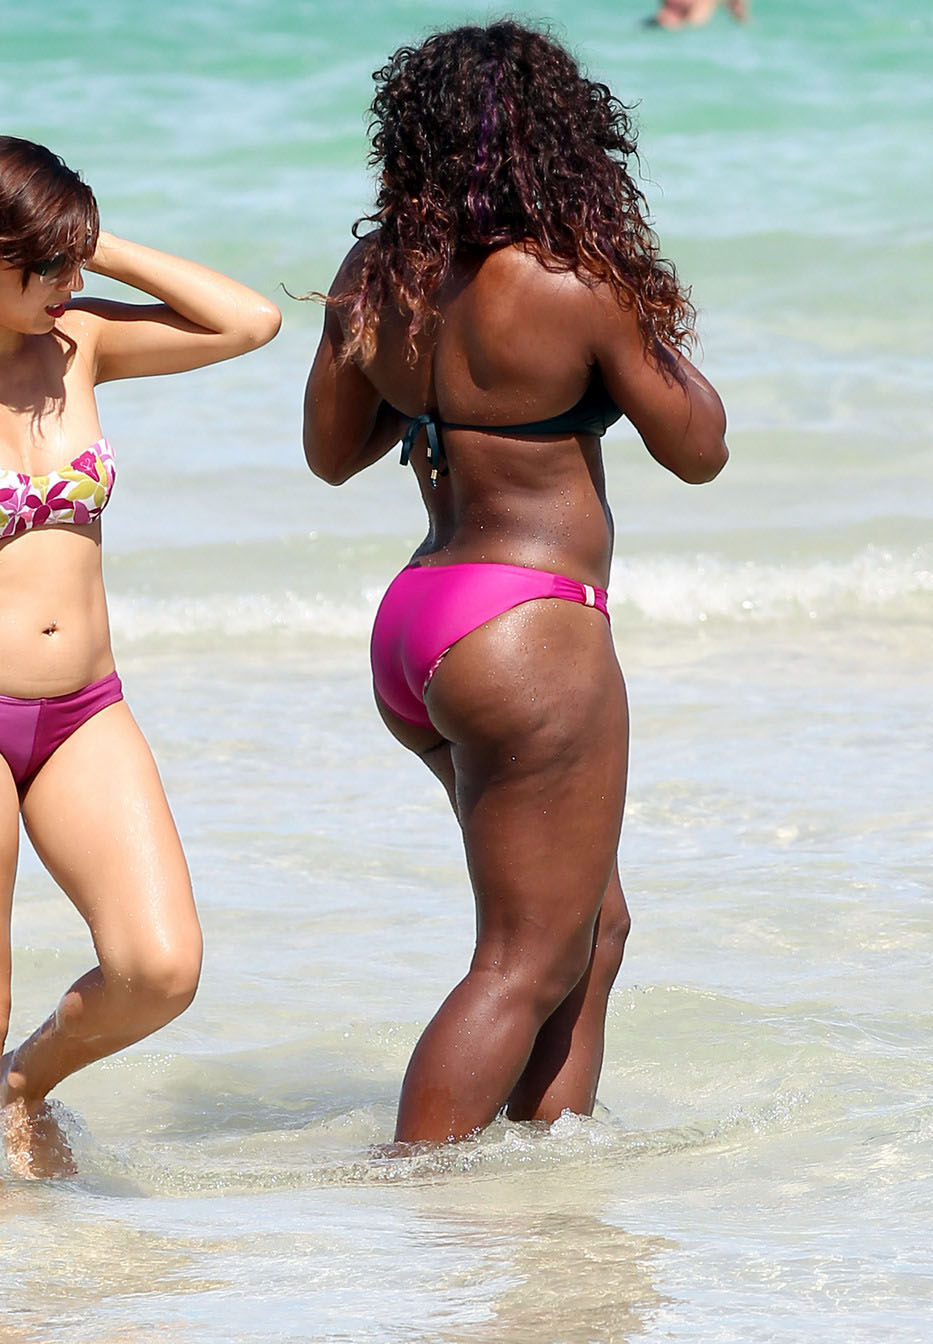 Serena Williams Bikini Pictures. 